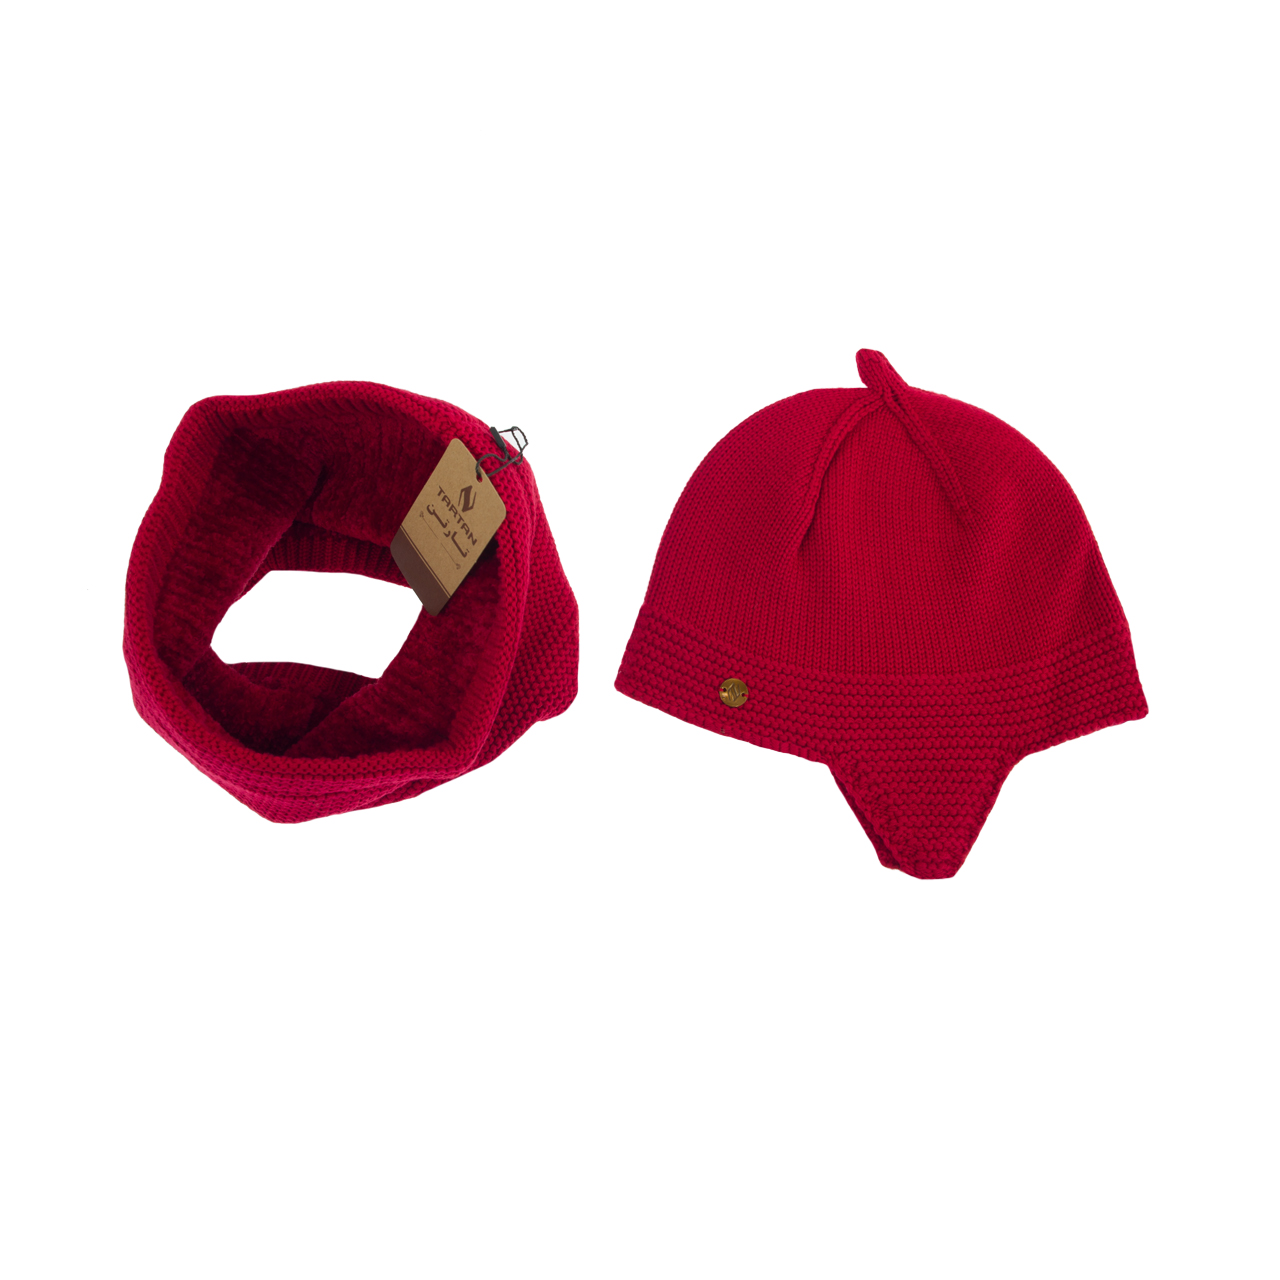 ست کلاه و شال گردن بافتنی تارتن مدل 70016 رنگ قرمز